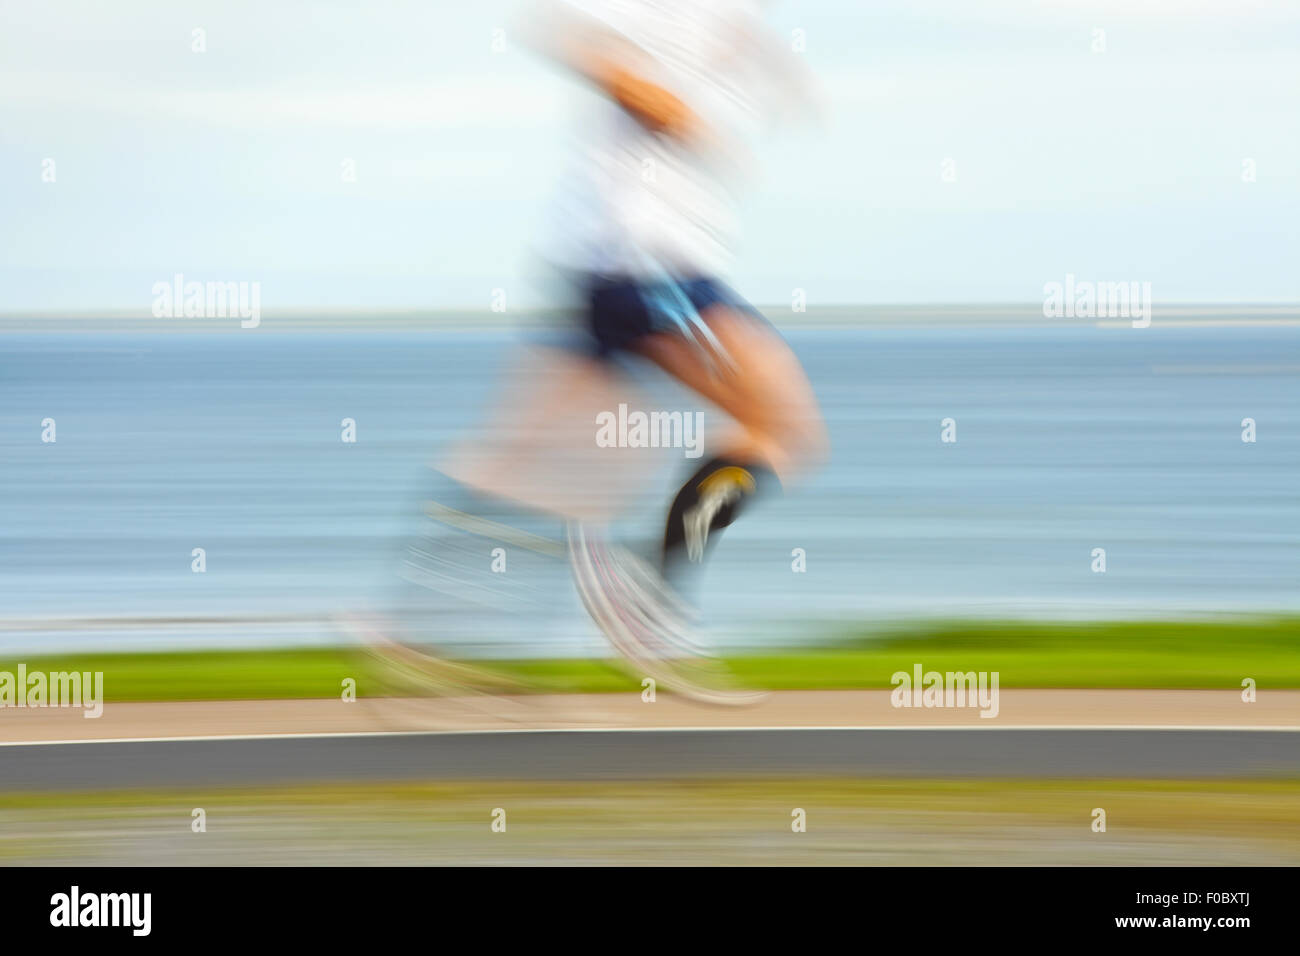 Jogging Runner par la côte de l'océan, blurred motion. Les gens ne sont pas reconnaissables Banque D'Images